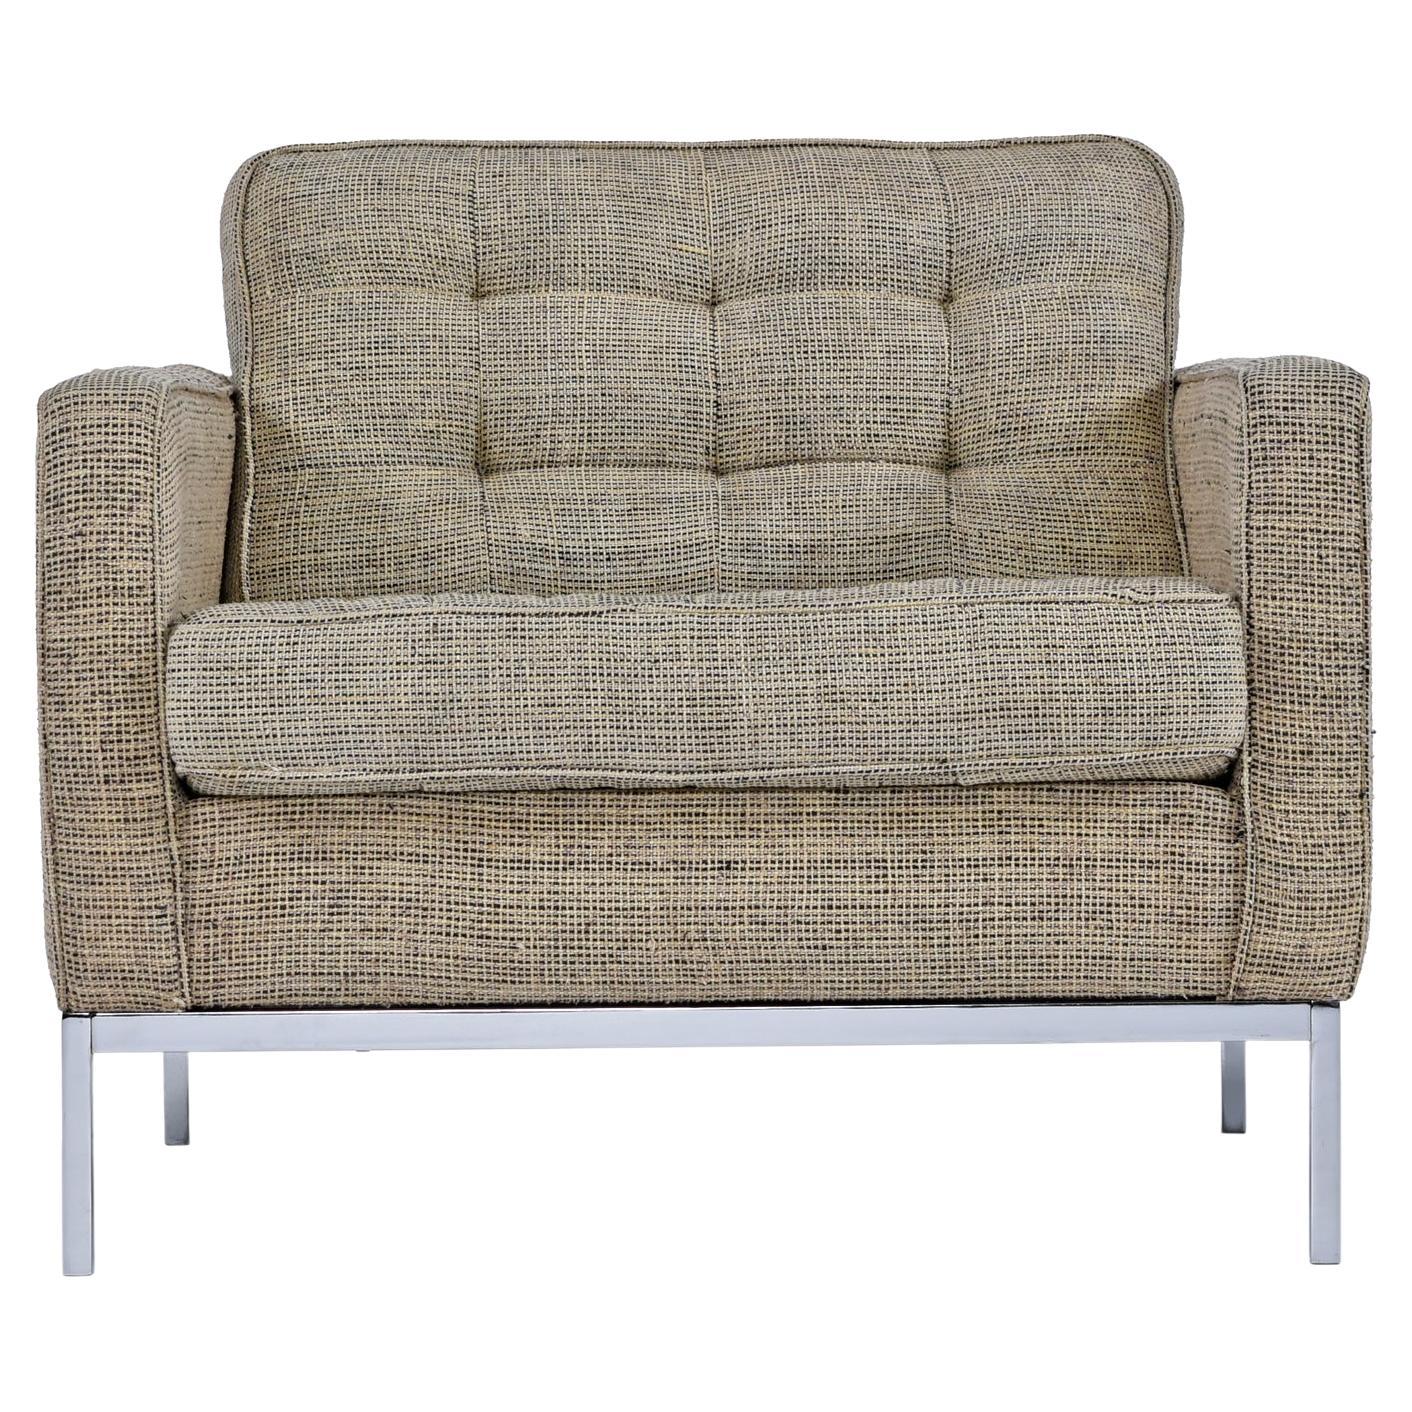 Vintage original Florence Knoll Sessel in grauem Tweed-Stoff. Obwohl nicht signiert oder markiert, ist dies 100% Knoll, und wahrscheinlich aus den 1980er Jahren. Gekauft aus einem Nachlass zusammen mit einem passenden Sofa und einem Herman Miller